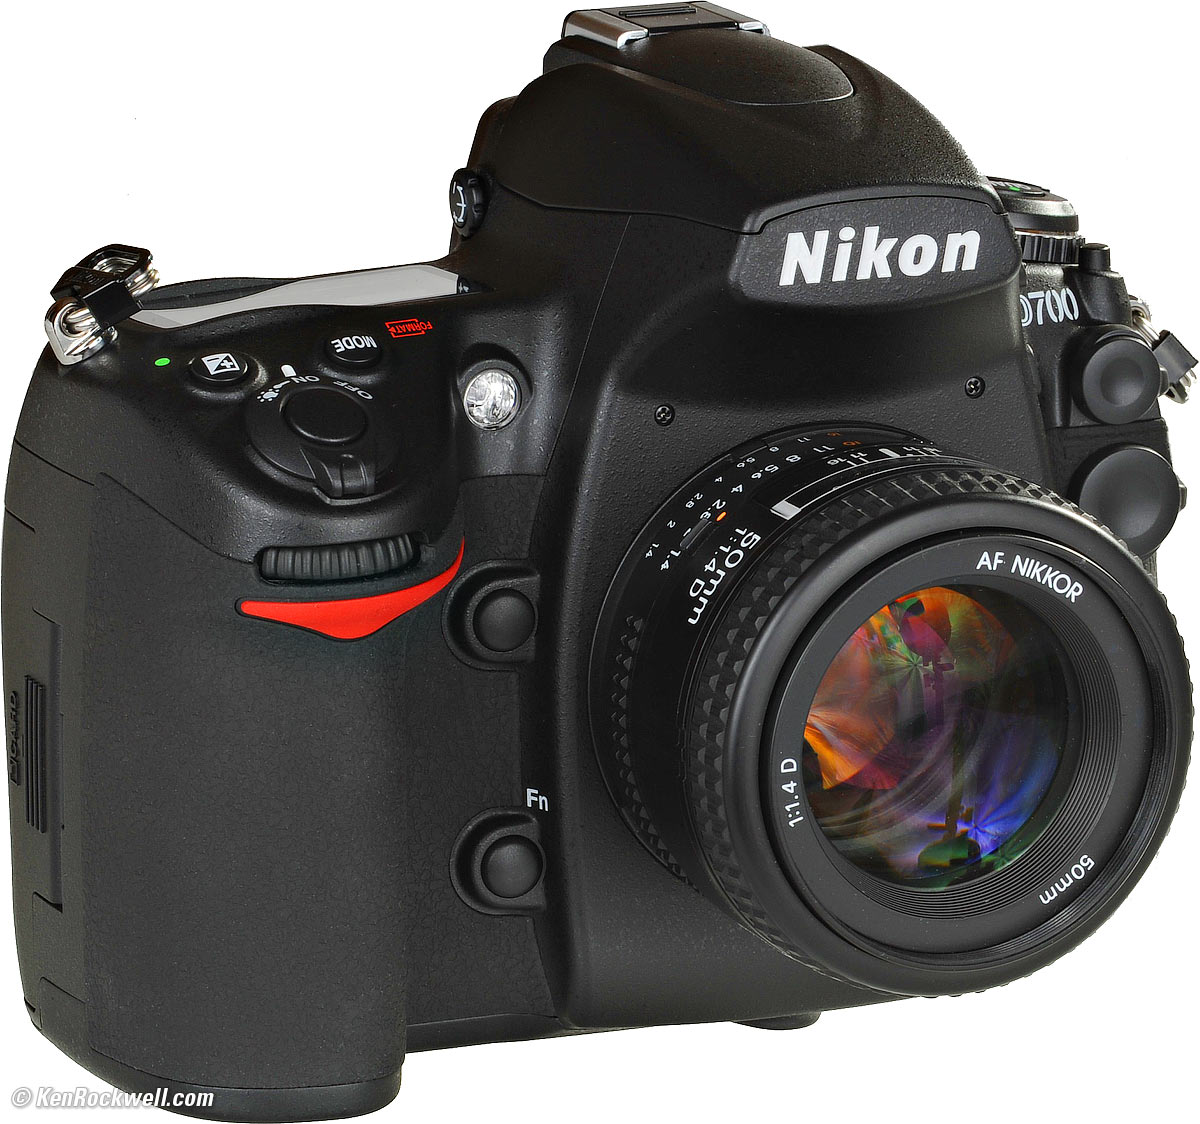 $1,000 off the Nikon D700